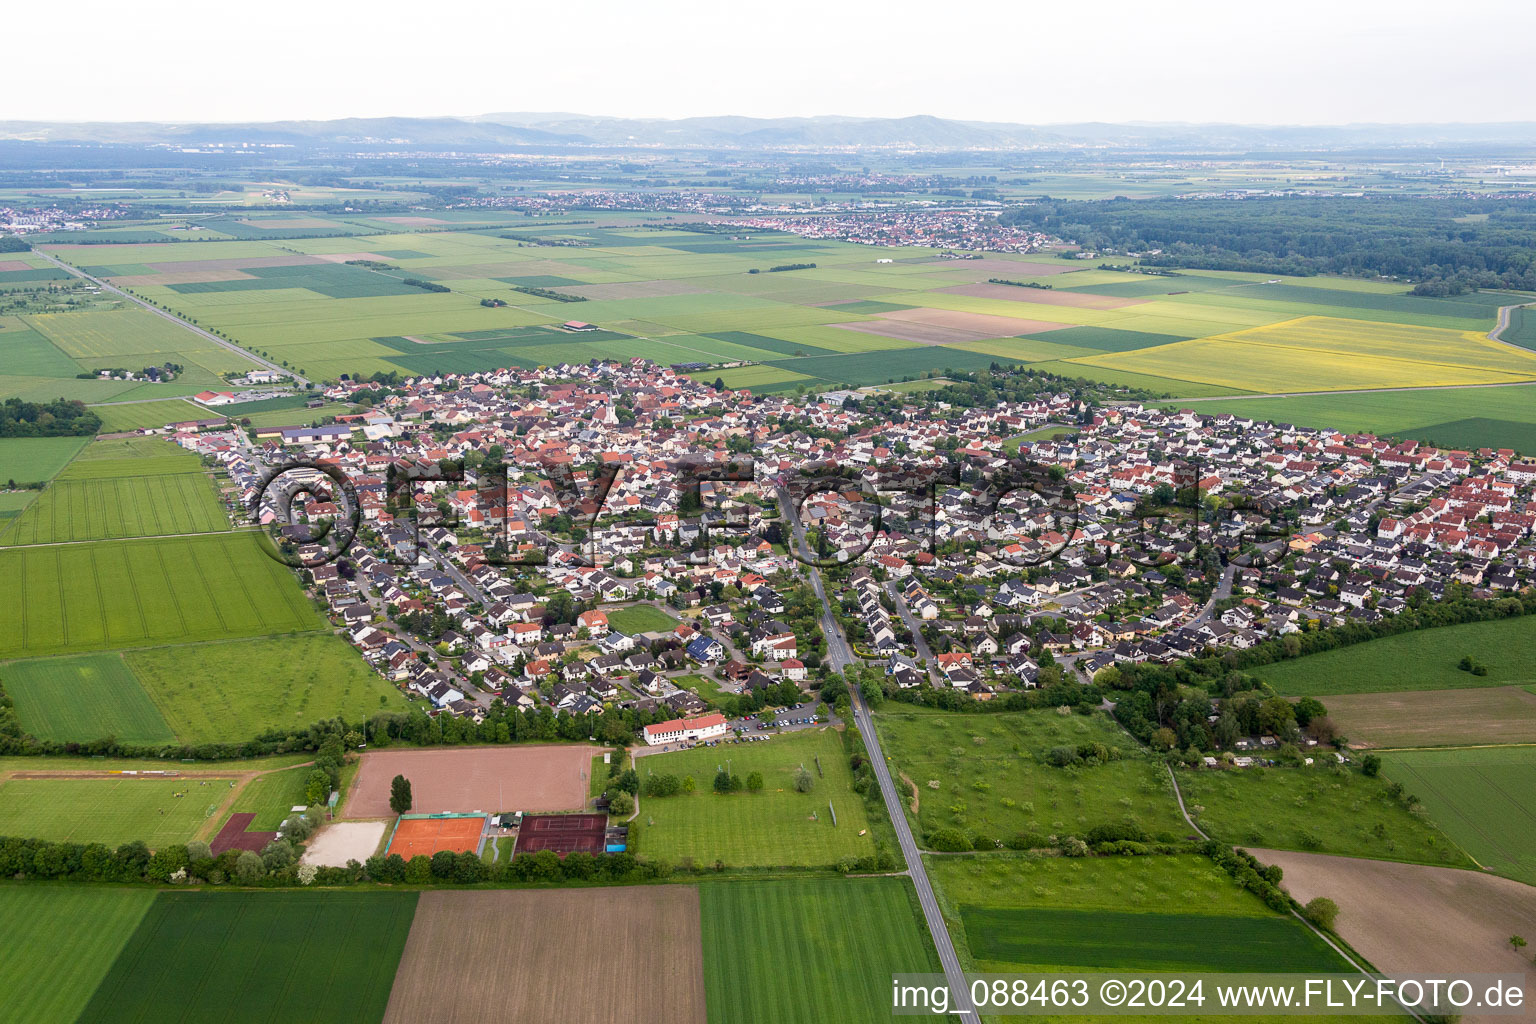 Luftbild von Dorf - Ansicht am Rande von landwirtschaftlichen Feldern und Nutzflächen im Ortsteil Leeheim in Riedstadt im Bundesland Hessen, Deutschland